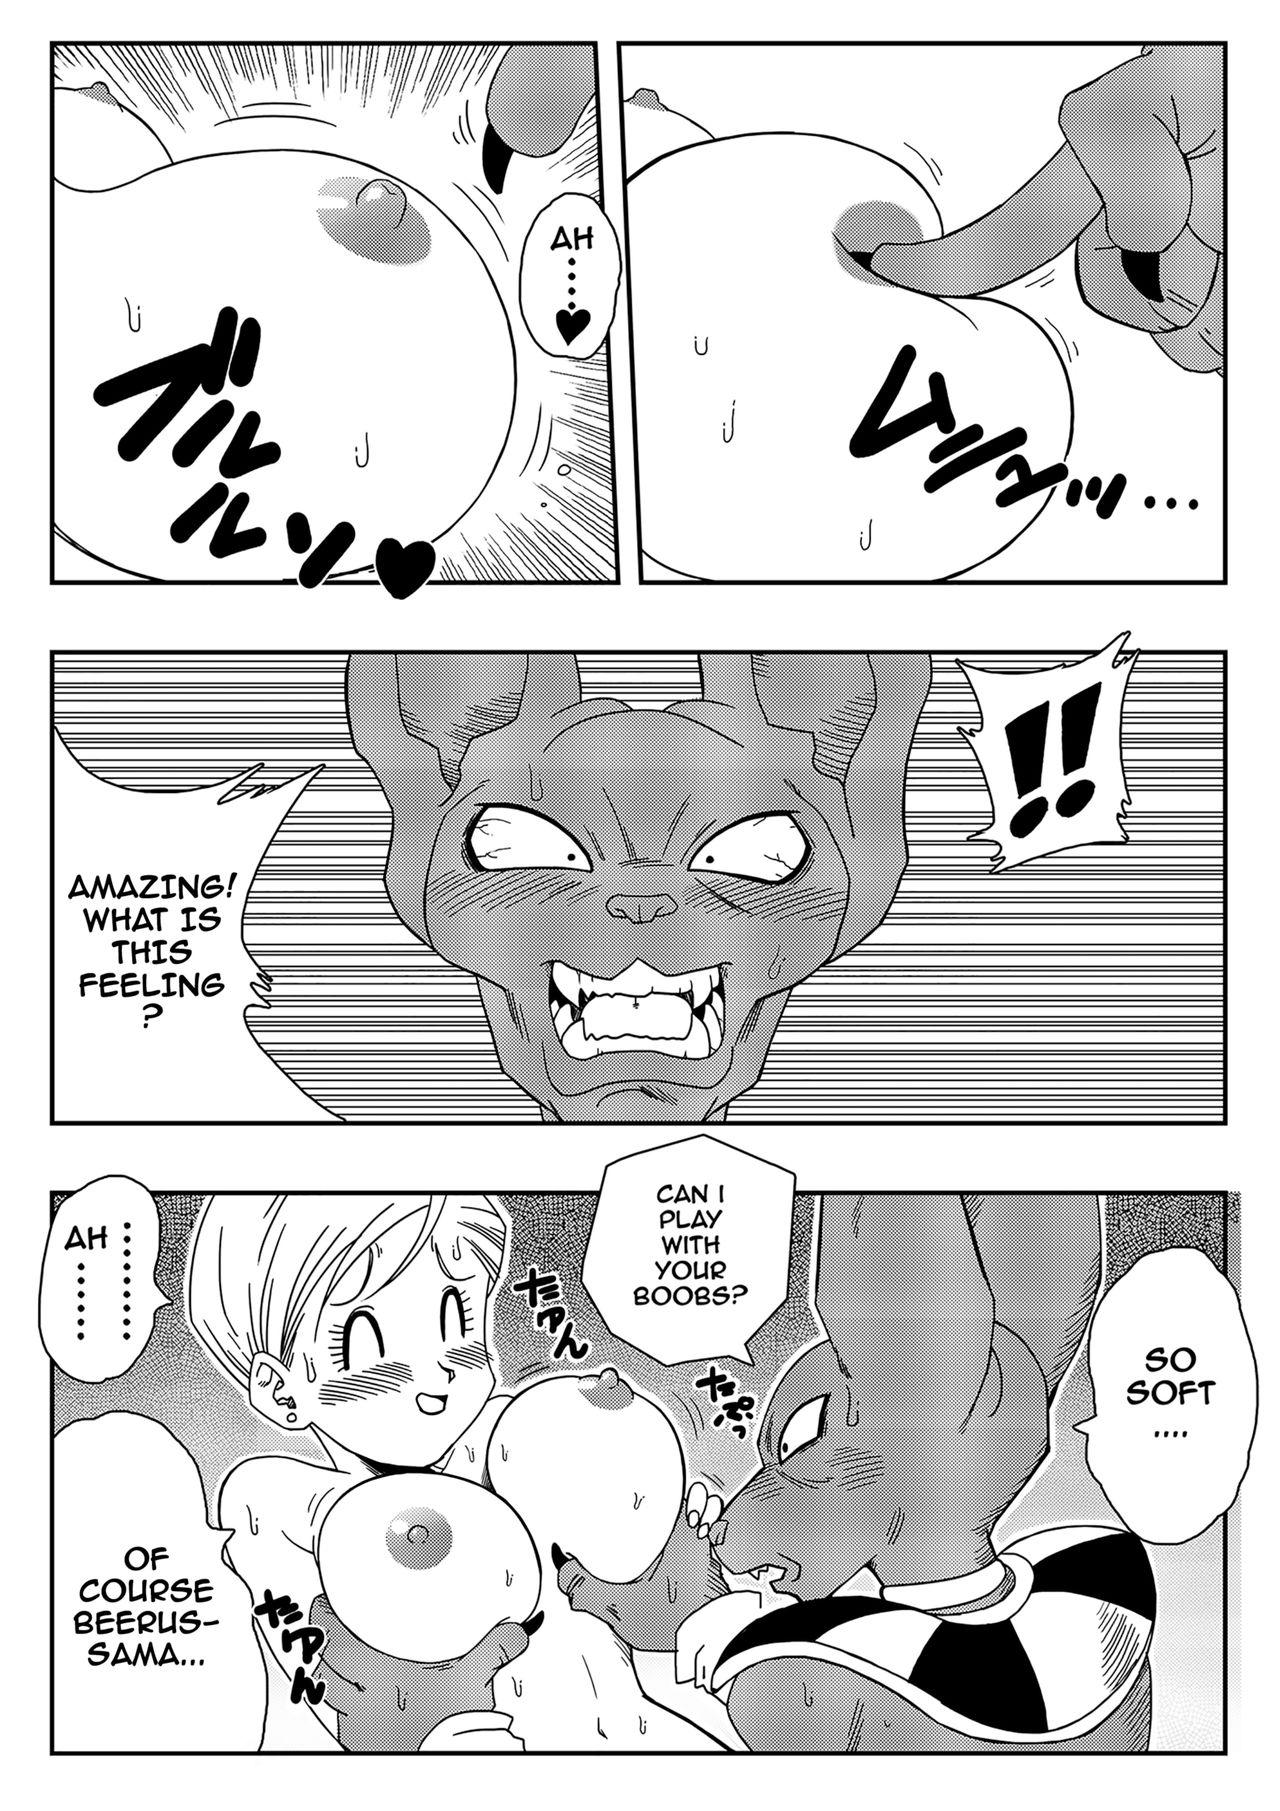 Blowjob Bulma Saves The Earth! - Dragon ball Bro - Page 7